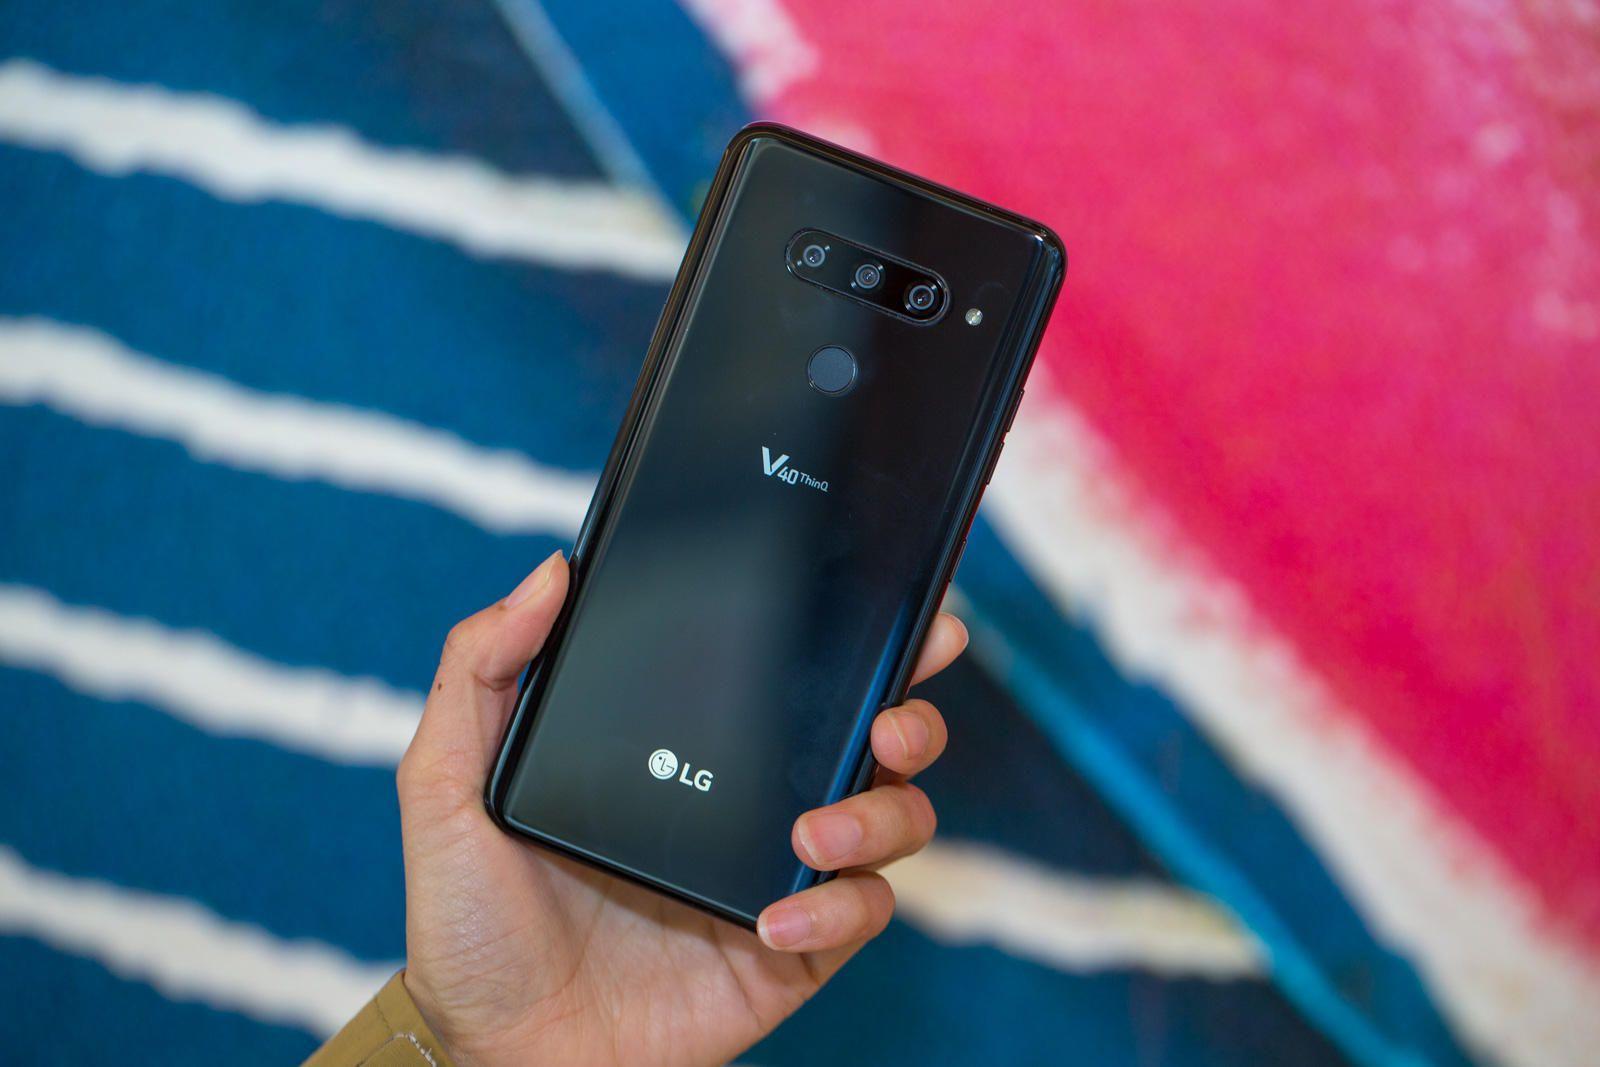 LG V40 ThinQ स्मार्टफोन भारत में 20 जनवरी को लाँच होगा, जानिये इसके बारे में